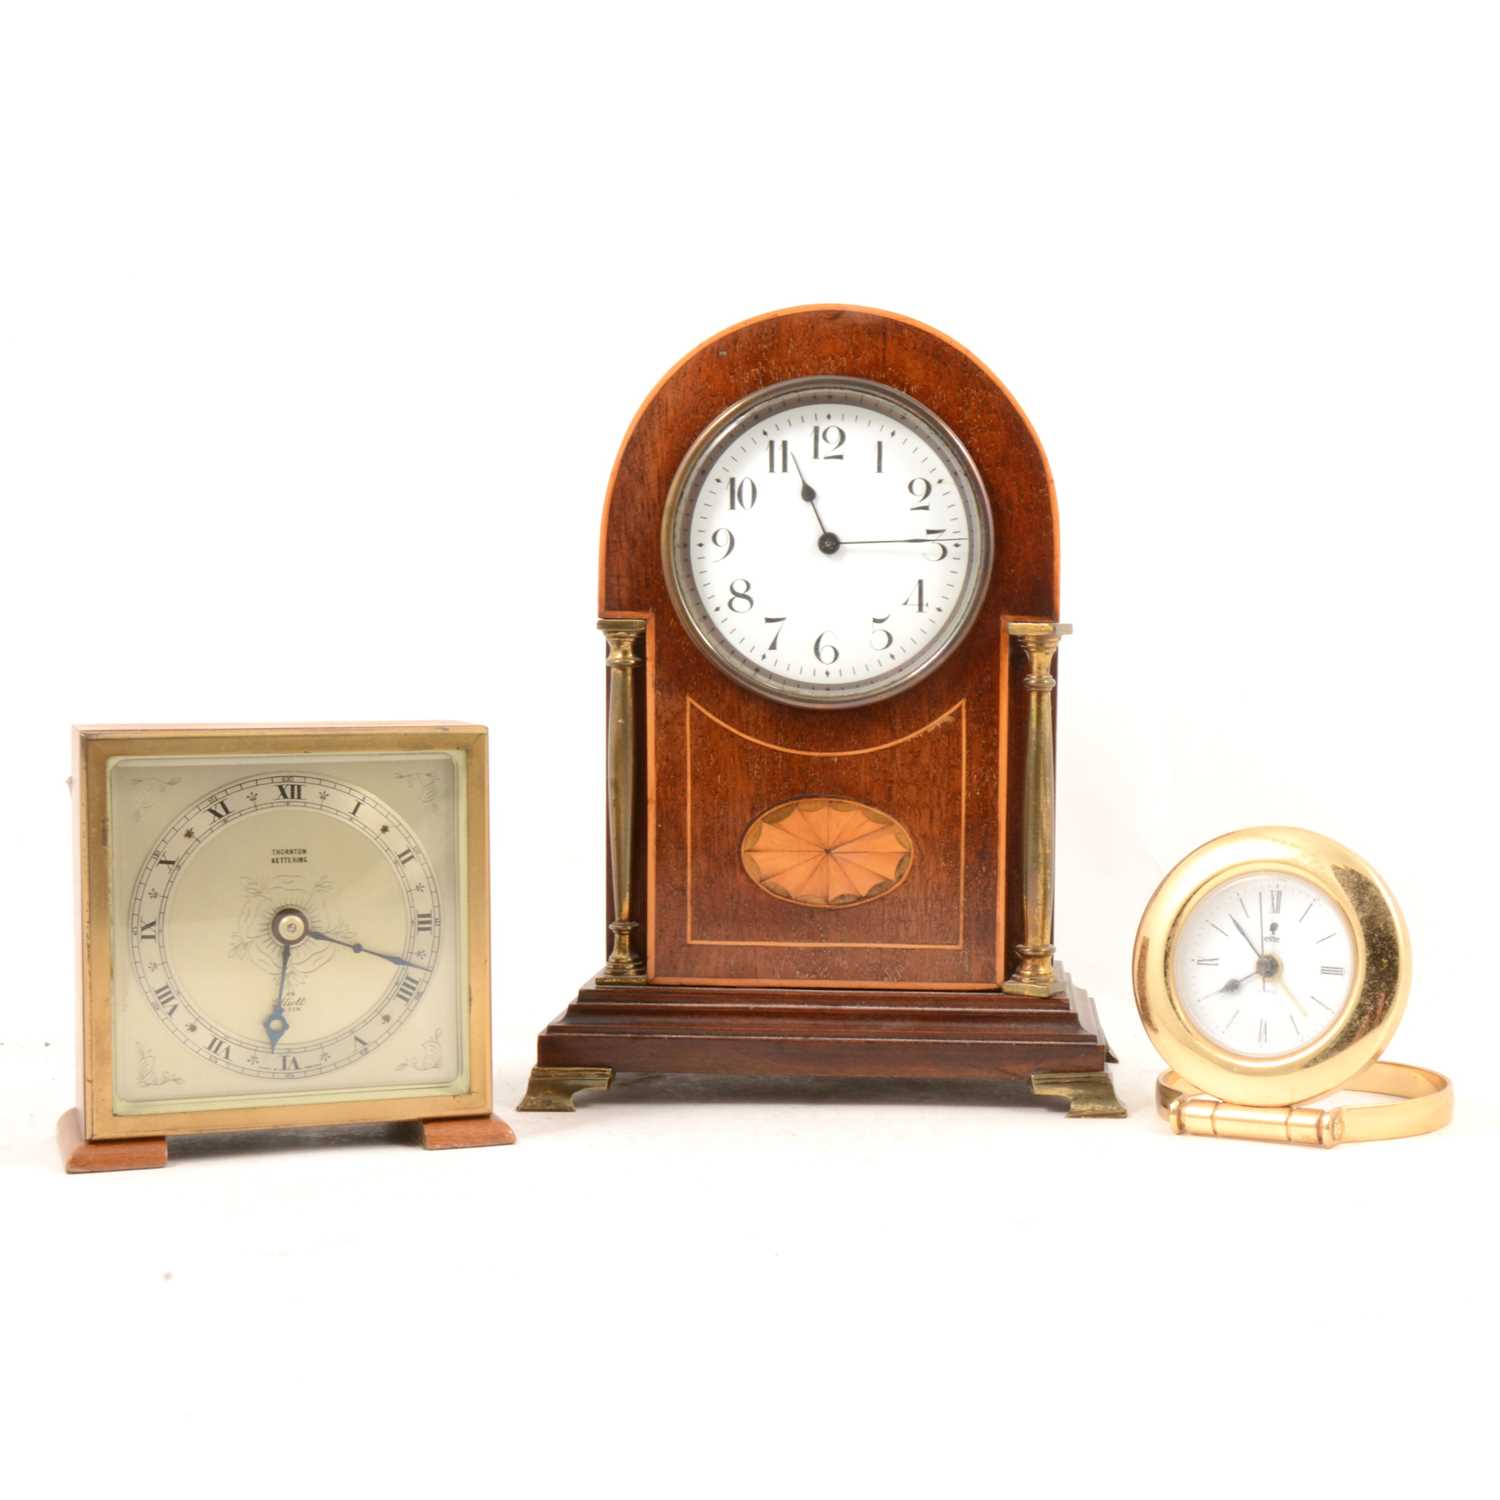 Lot 140 - Edwardian inlaid mahogany mantel clock, Elliott mantel clock and a quartz clock